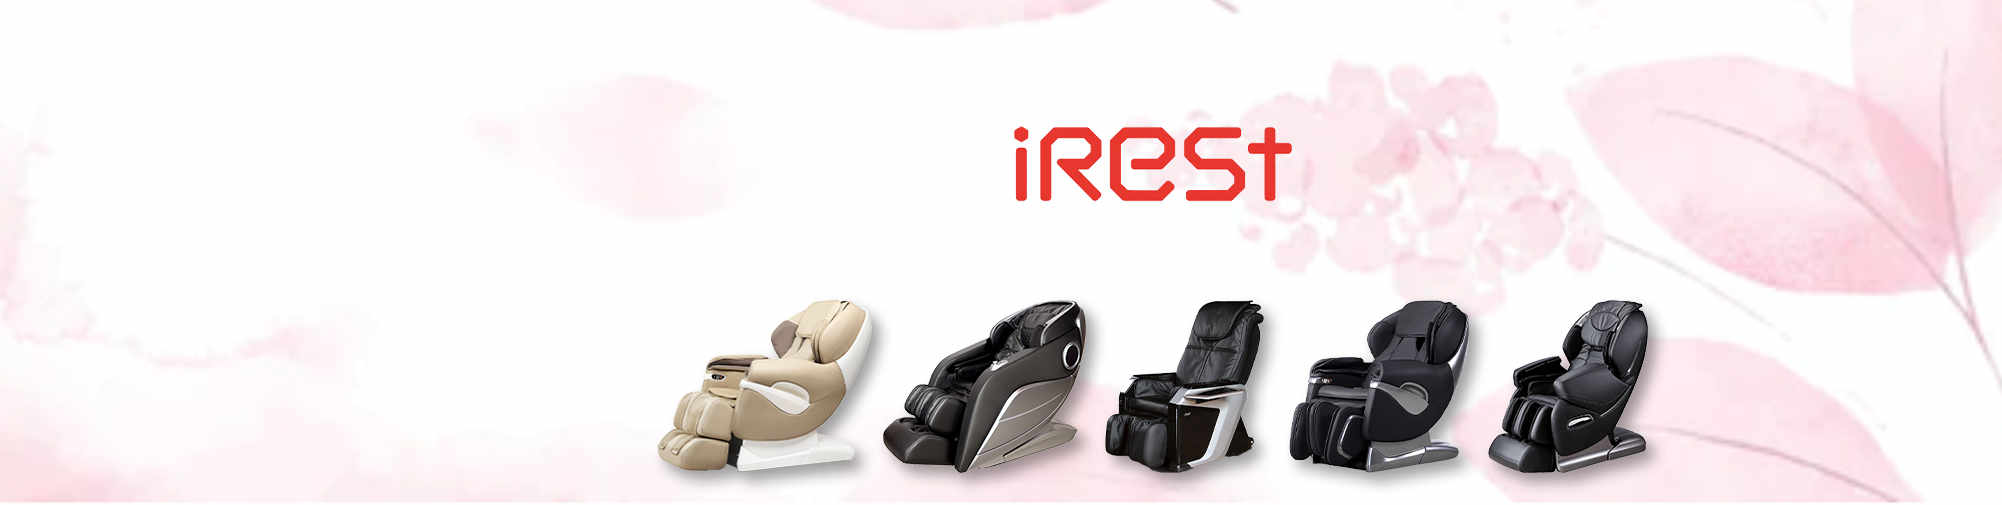 iRest – závan čerstvého vzduchu pro trh s masážními křesly | Masážní křeslo World